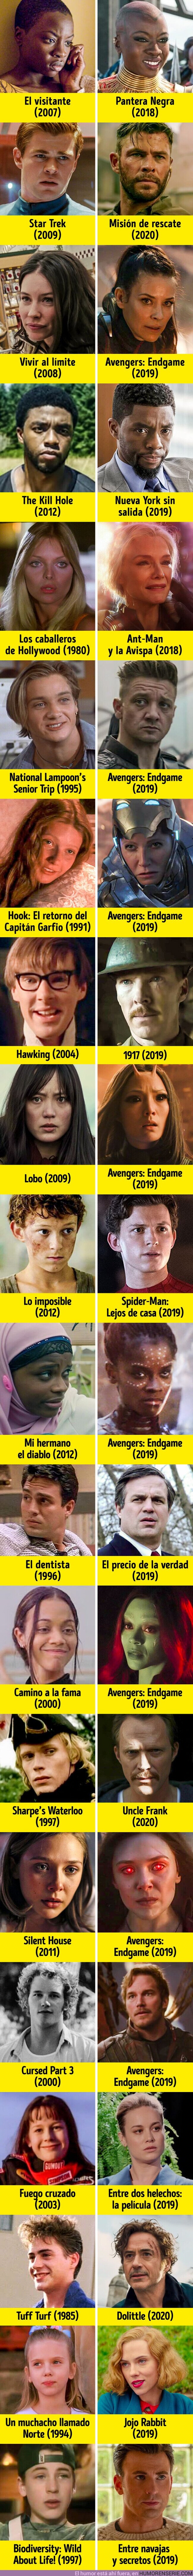 53560 - GALERÍA: Así han cambiado los héroes de Marvel desde su primera película hasta la última